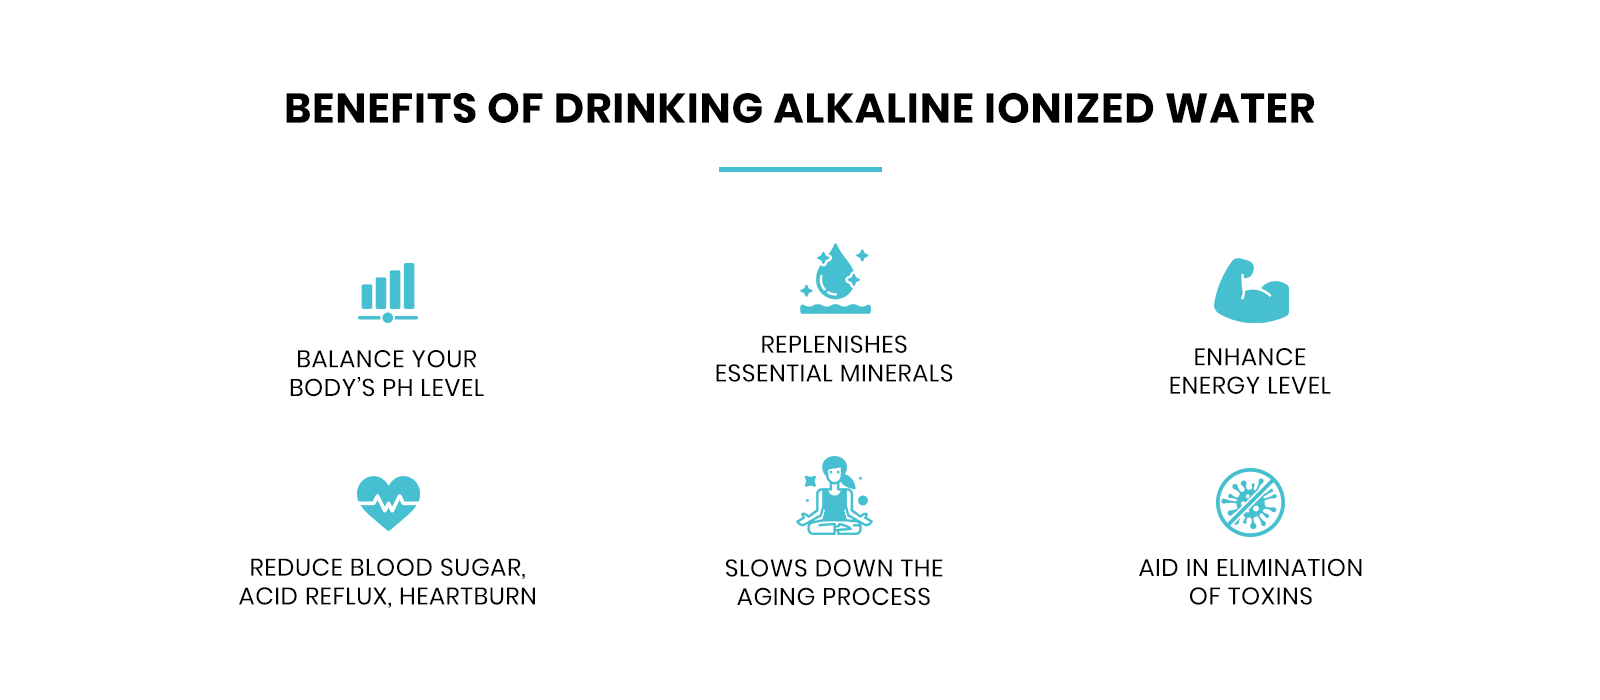 benefits of drinking alkaline ionized water from tokui kangen water machine australia